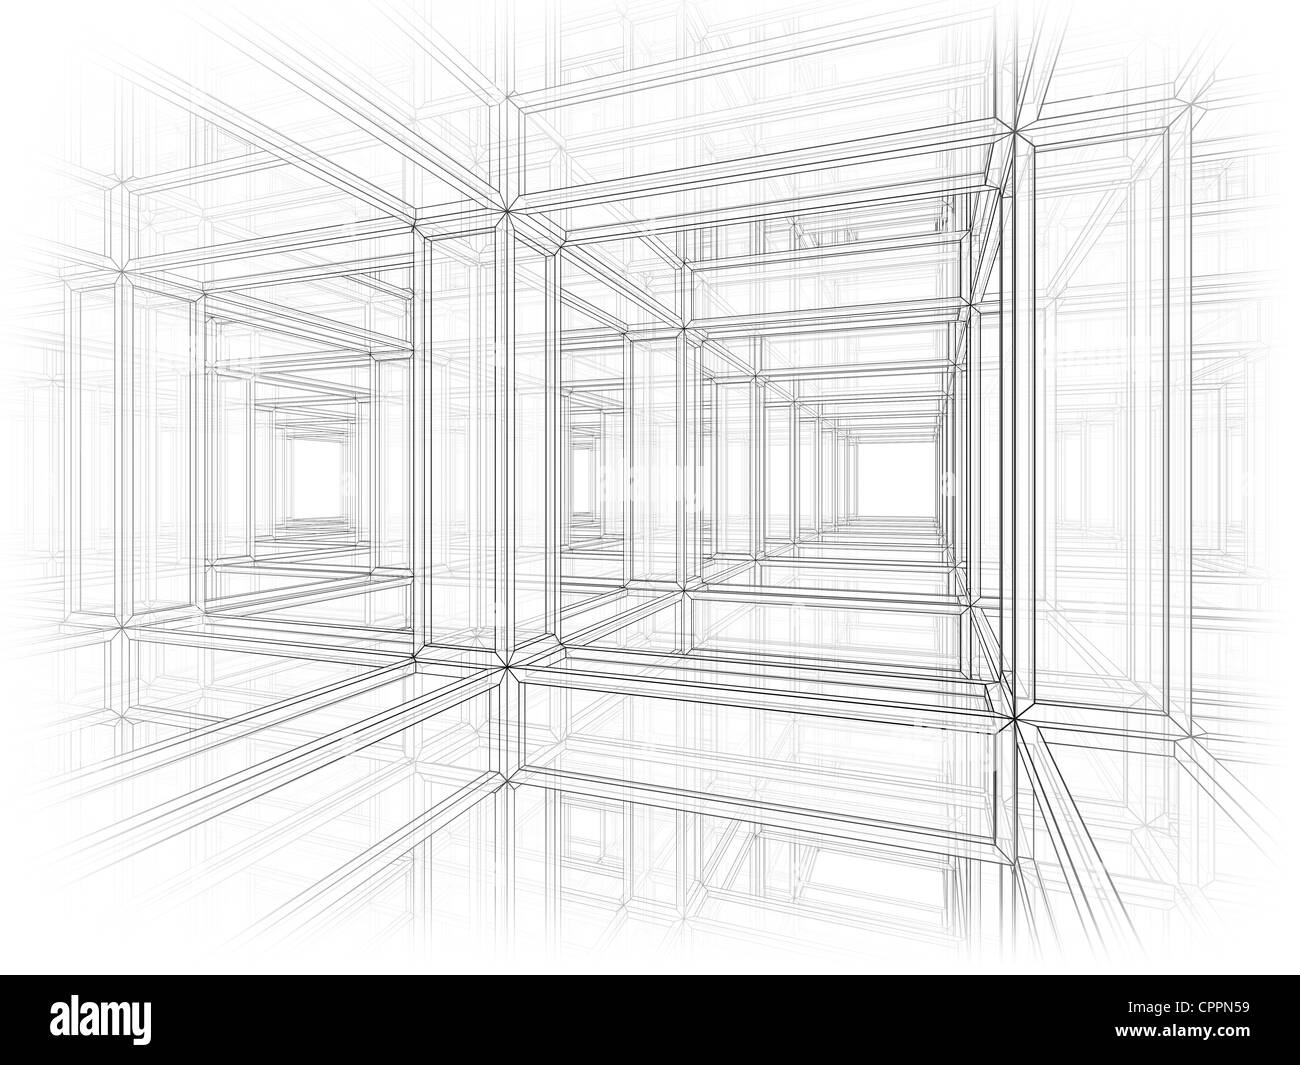 Abstrakt Architektur Perspektive Umriss Hintergrund. Innenraum einer modernen verspannter Konstruktion Stockfoto